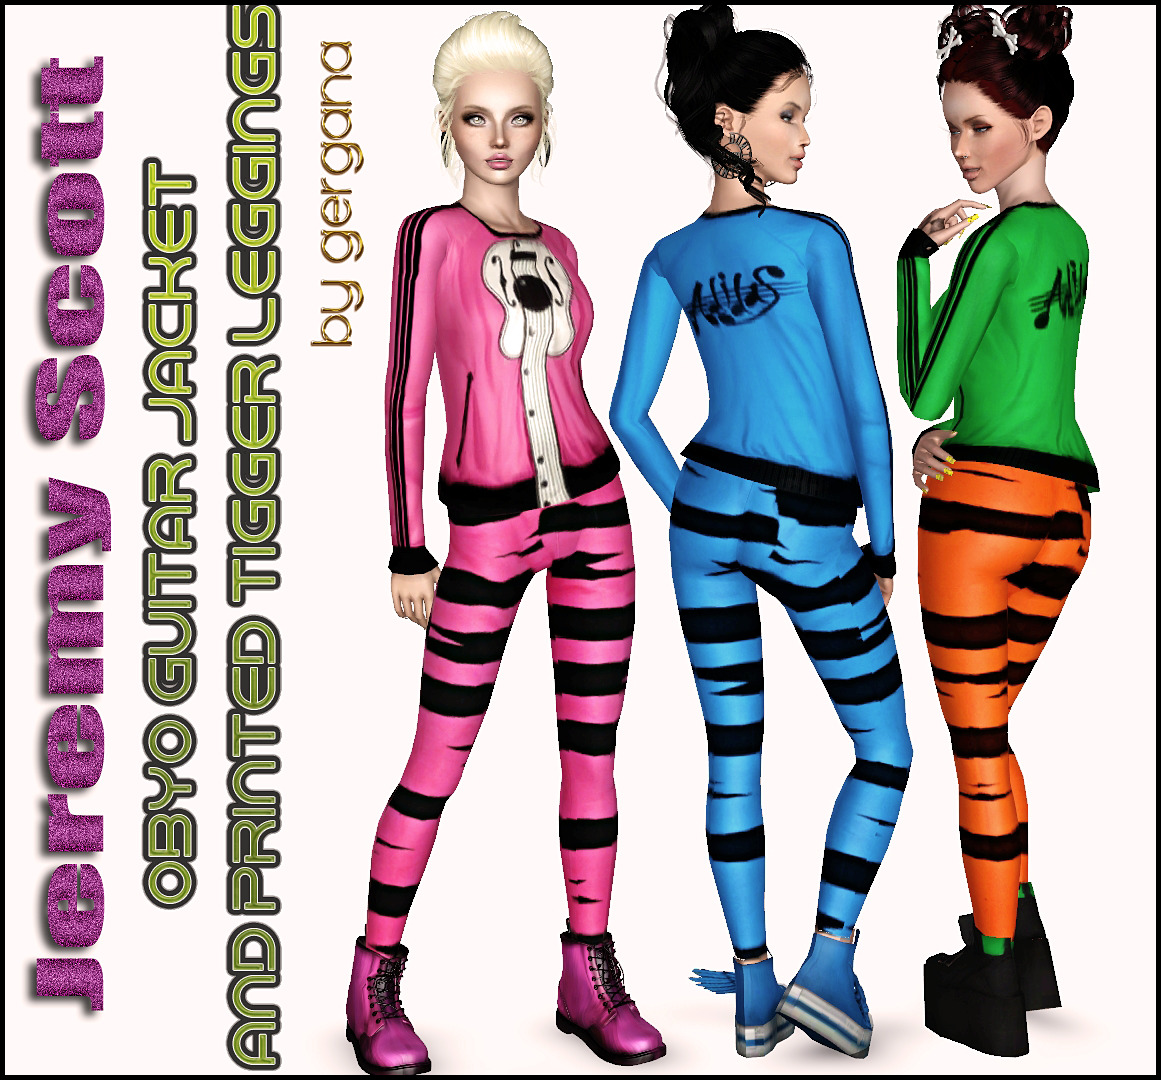   The Sims 3.Одежда женская: спортивная. - Страница 2 Tumblr_n5s4mmf2OE1rkjzl0o1_1280